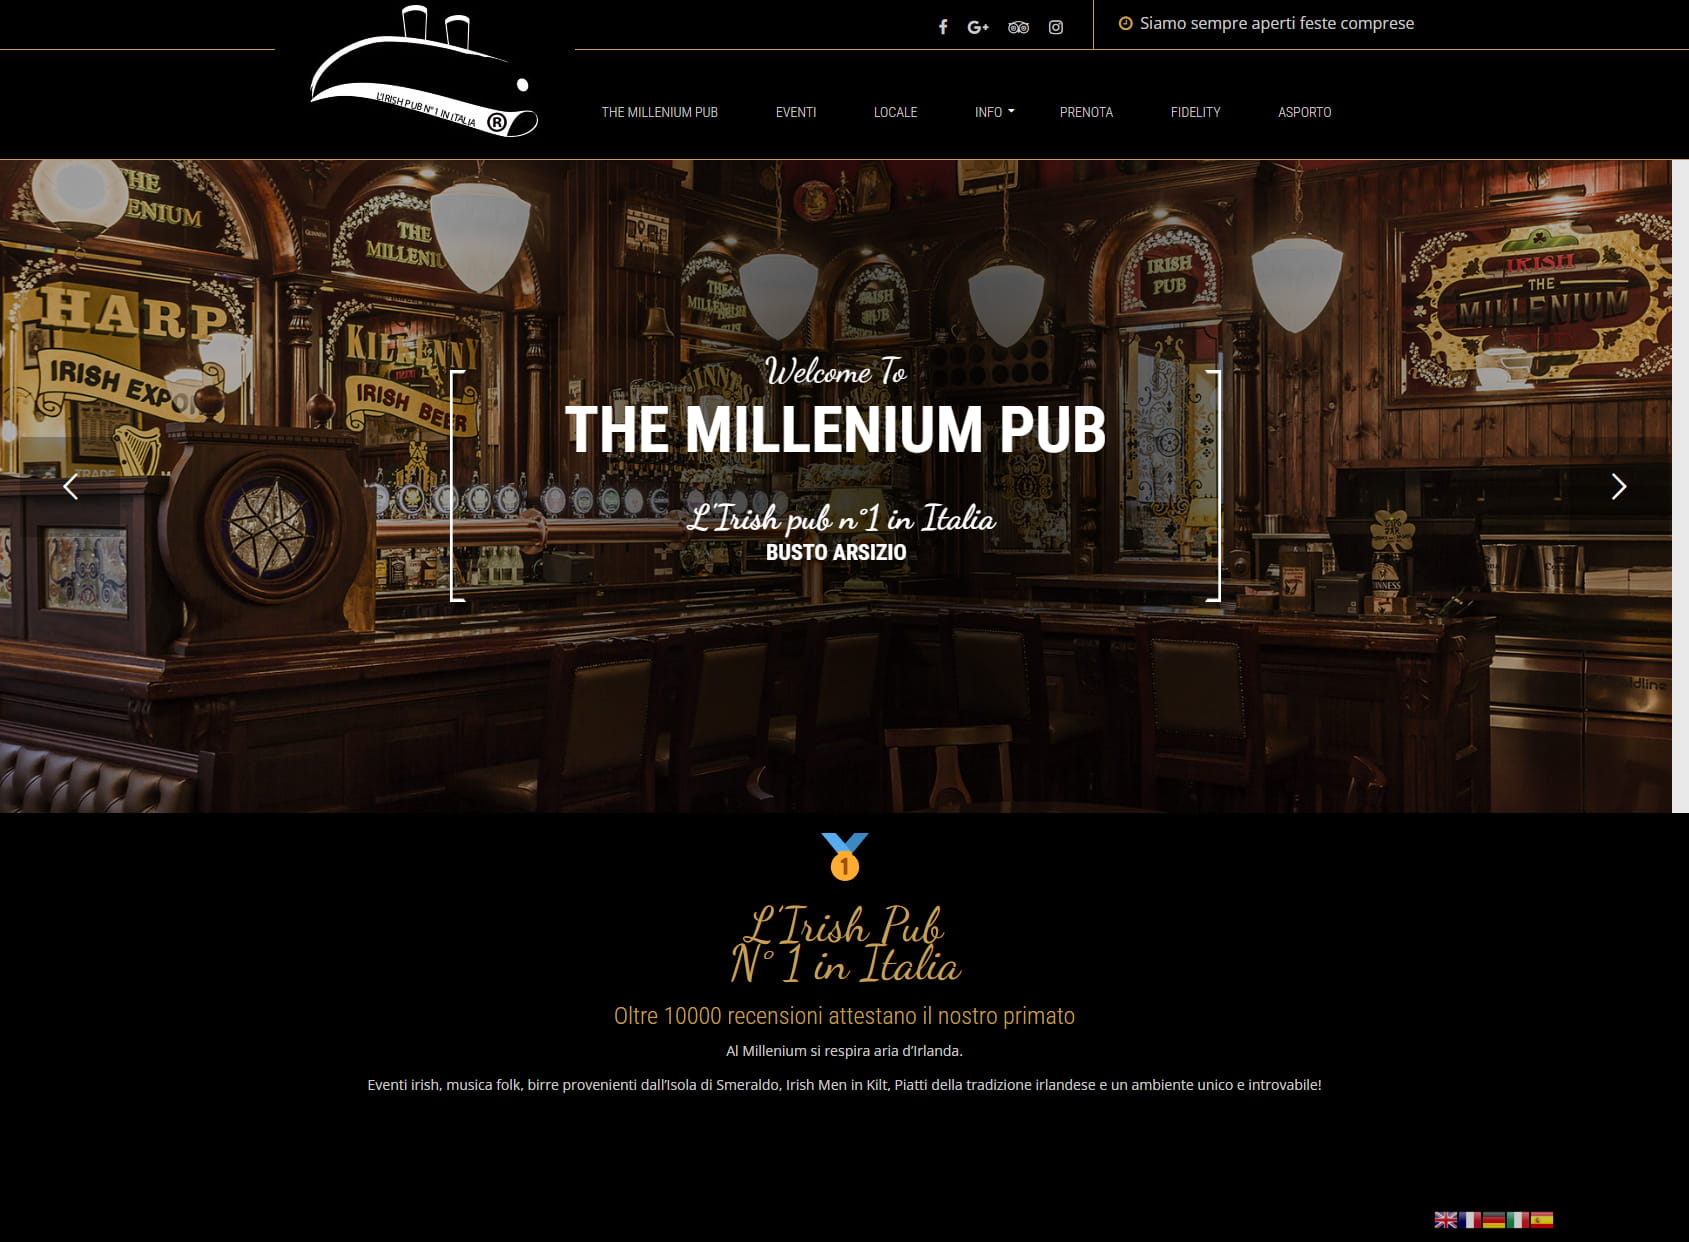 The Millenium pub